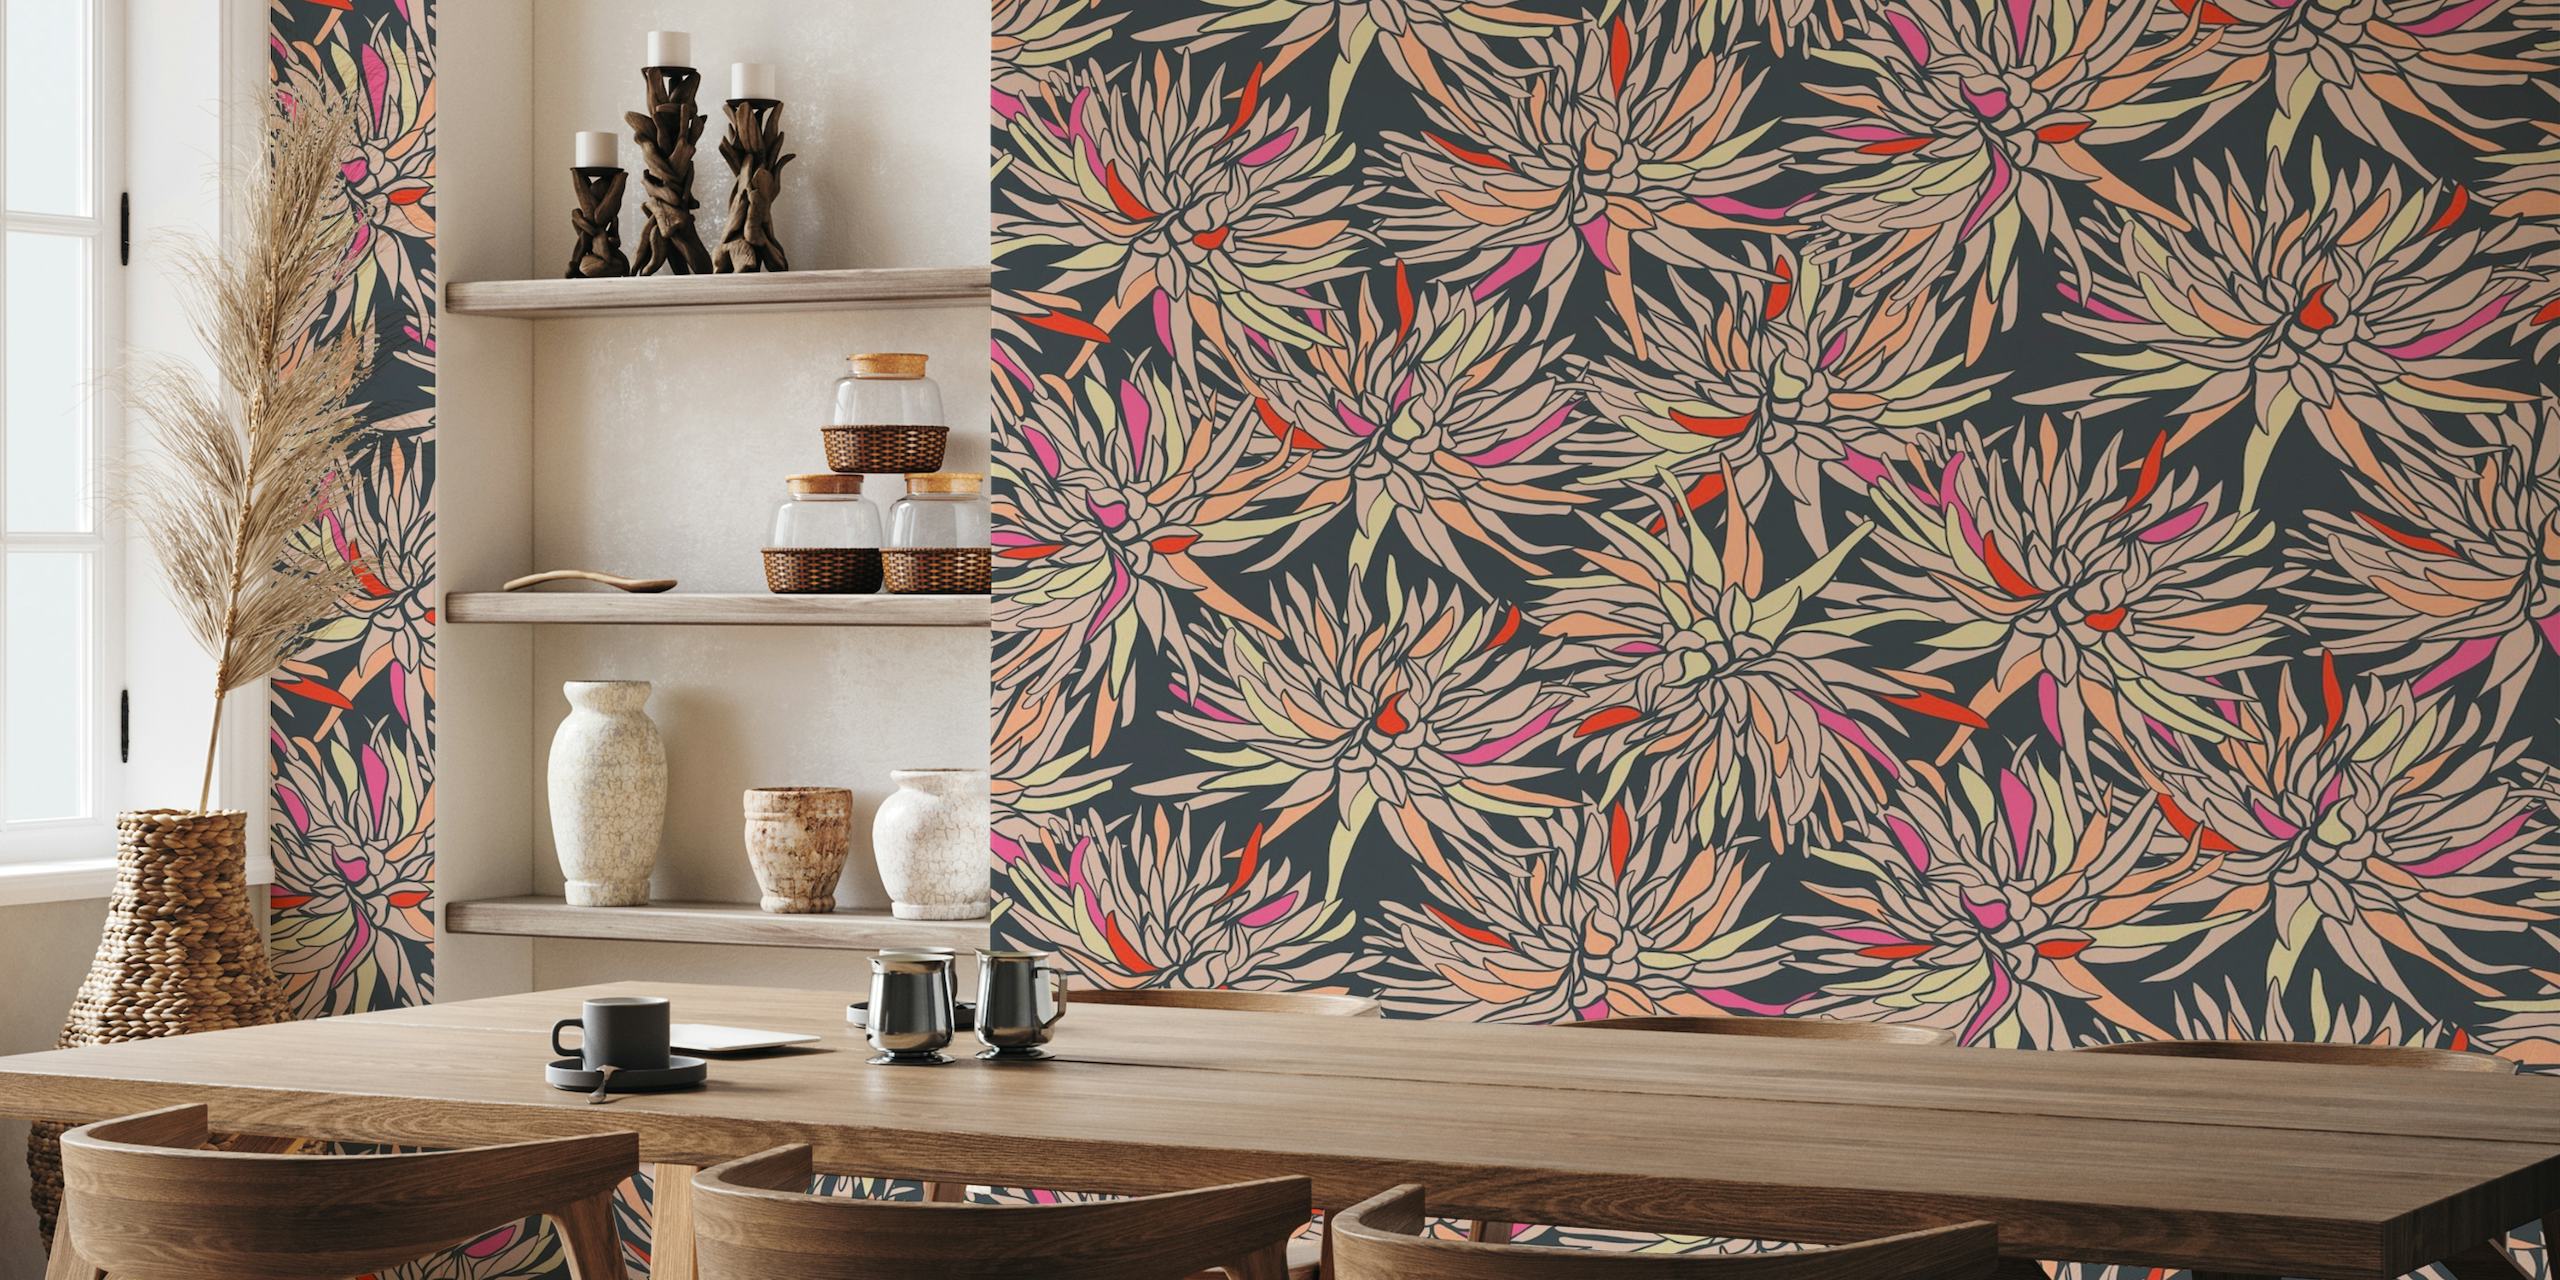 Dahlia blossom wallpaper